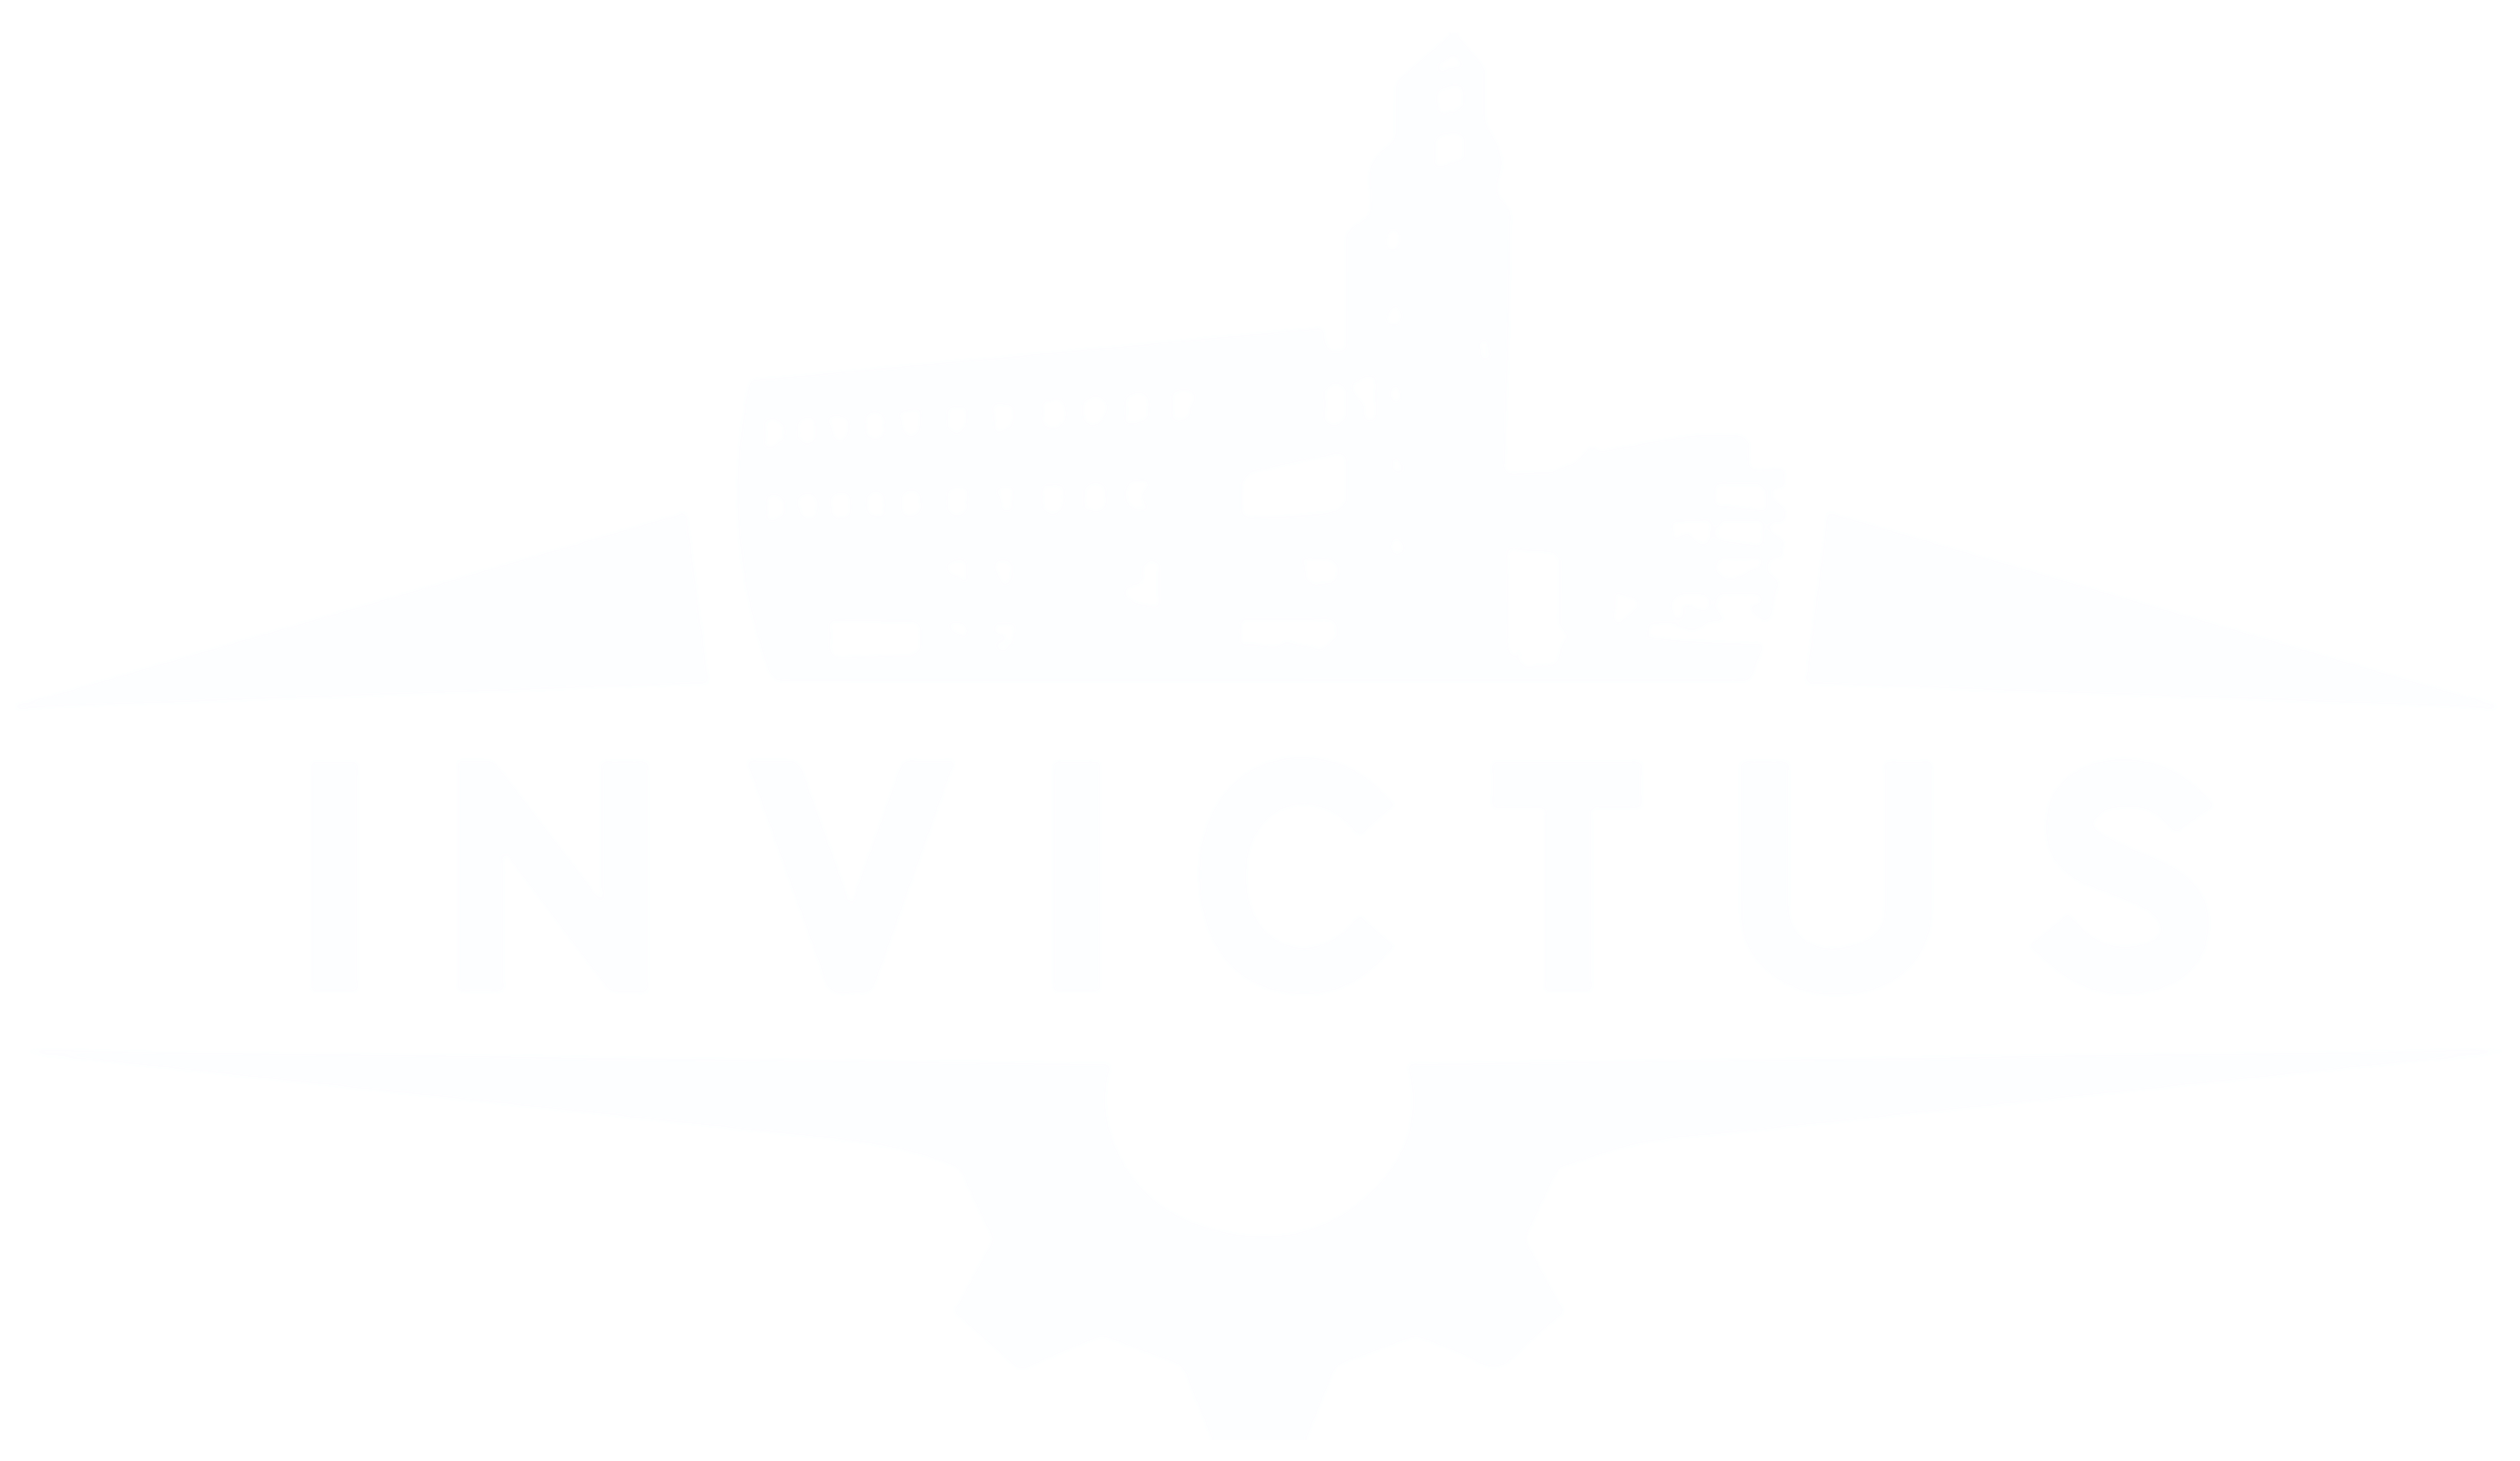 invictus logo